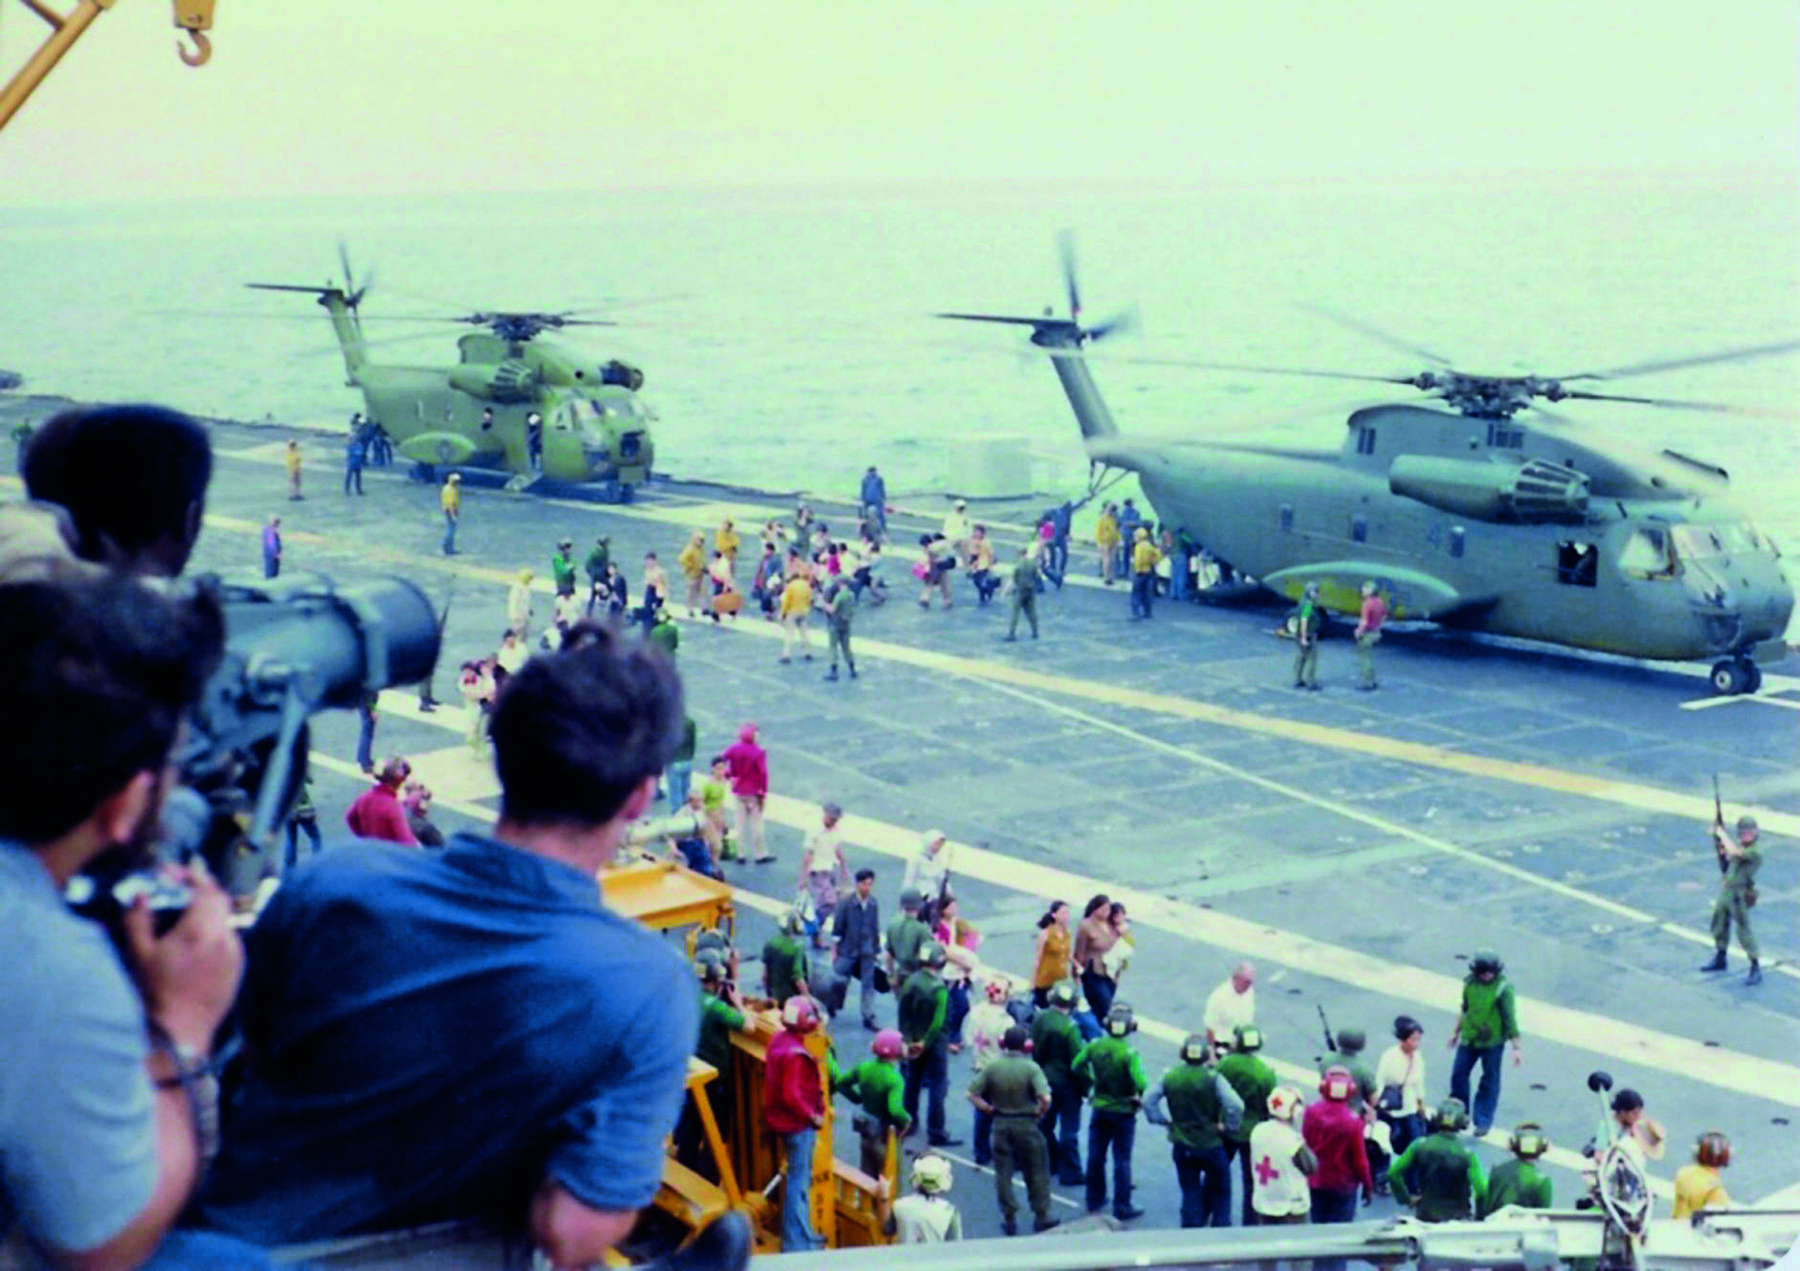 Fotografia. Dois helicópteros militares pousados na pista de um porta-aviões. Algumas pessoas caminham em direção às aeronaves enquanto um grupo de pessoas, no primeiro plano da imagem, observa a cena. Alguns portam máquinas fotográficas.